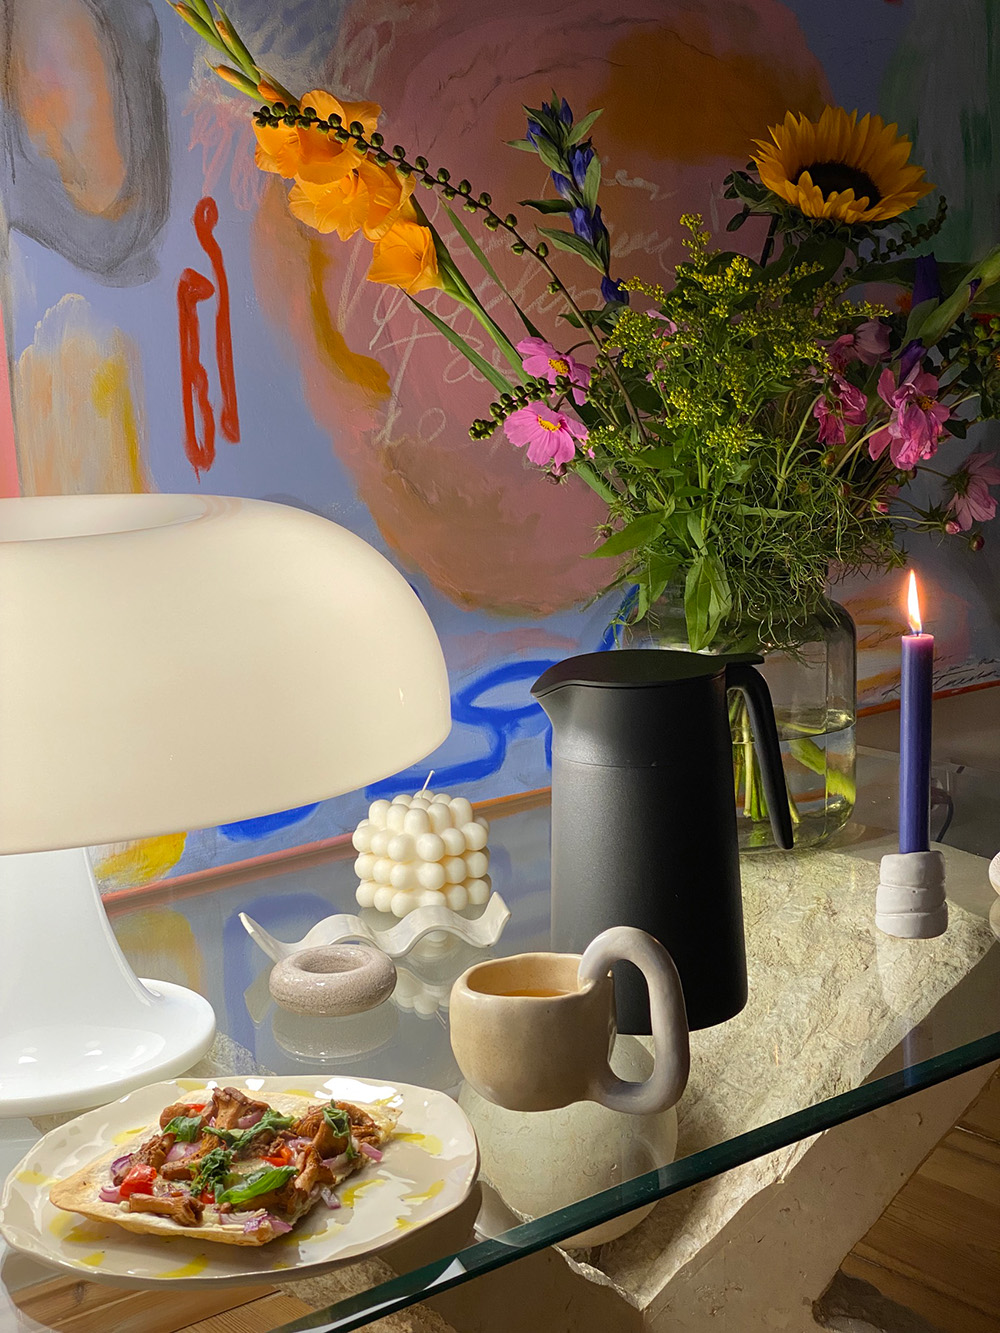 Lampa Nesso od Artemide, cena: ok. 1120 zł. Fot. Joanna Wójtowicz/@joannawojt. Na zdjęciu fragment obrazu Kasi Kotnowskiej.